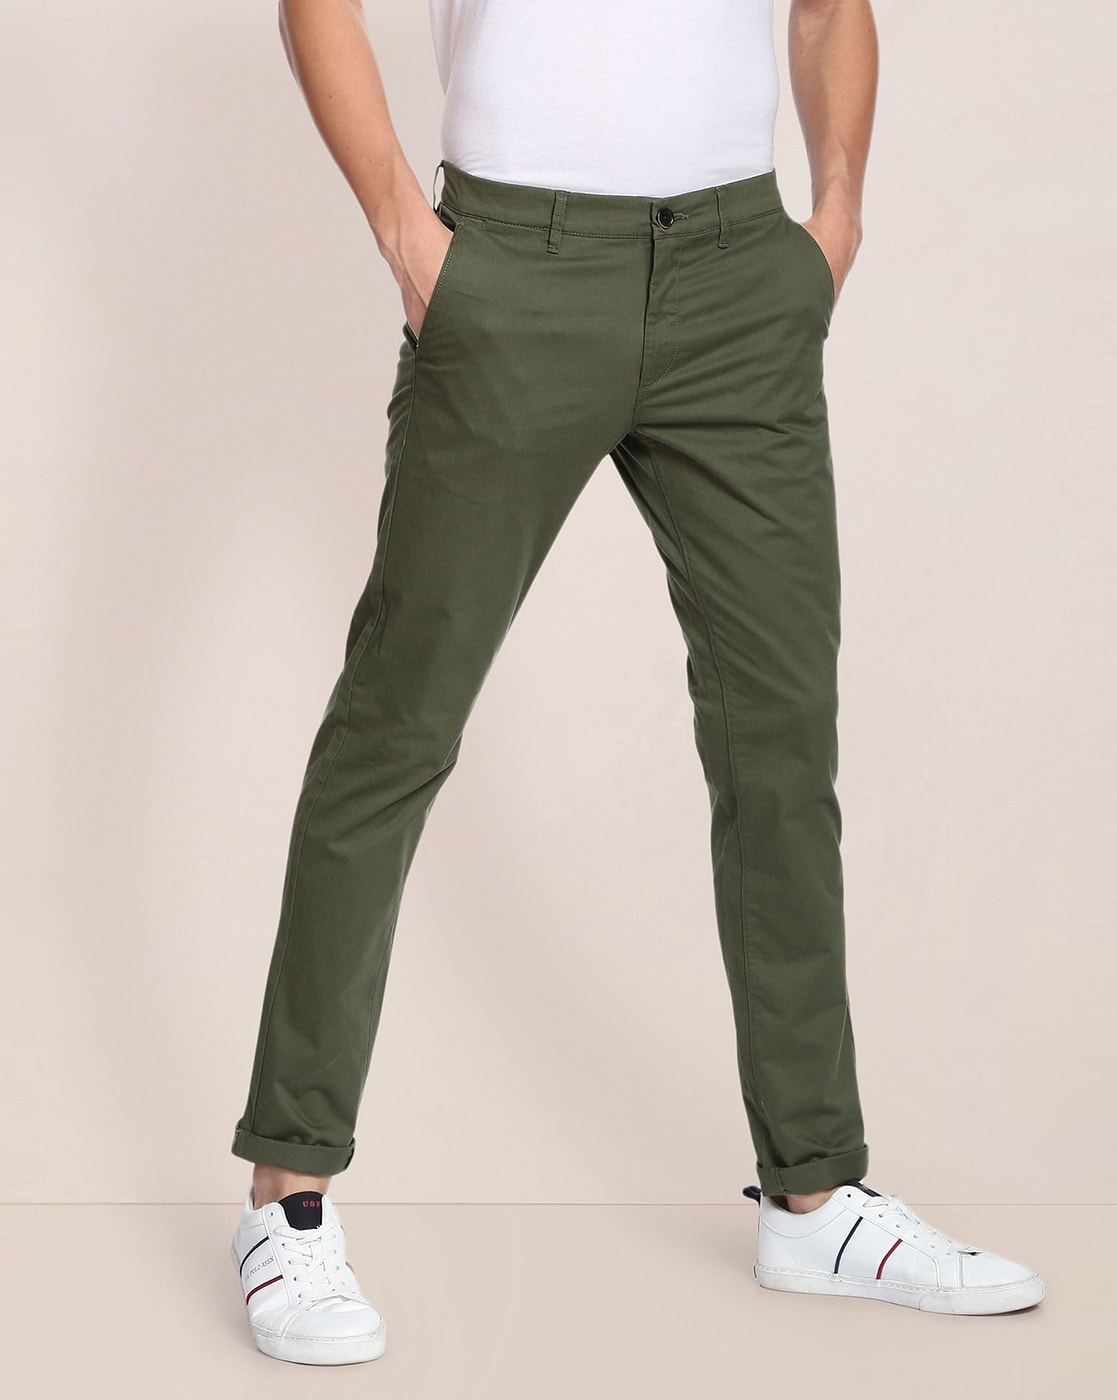 Polo Ralph Lauren Mens Jeans  Dillards